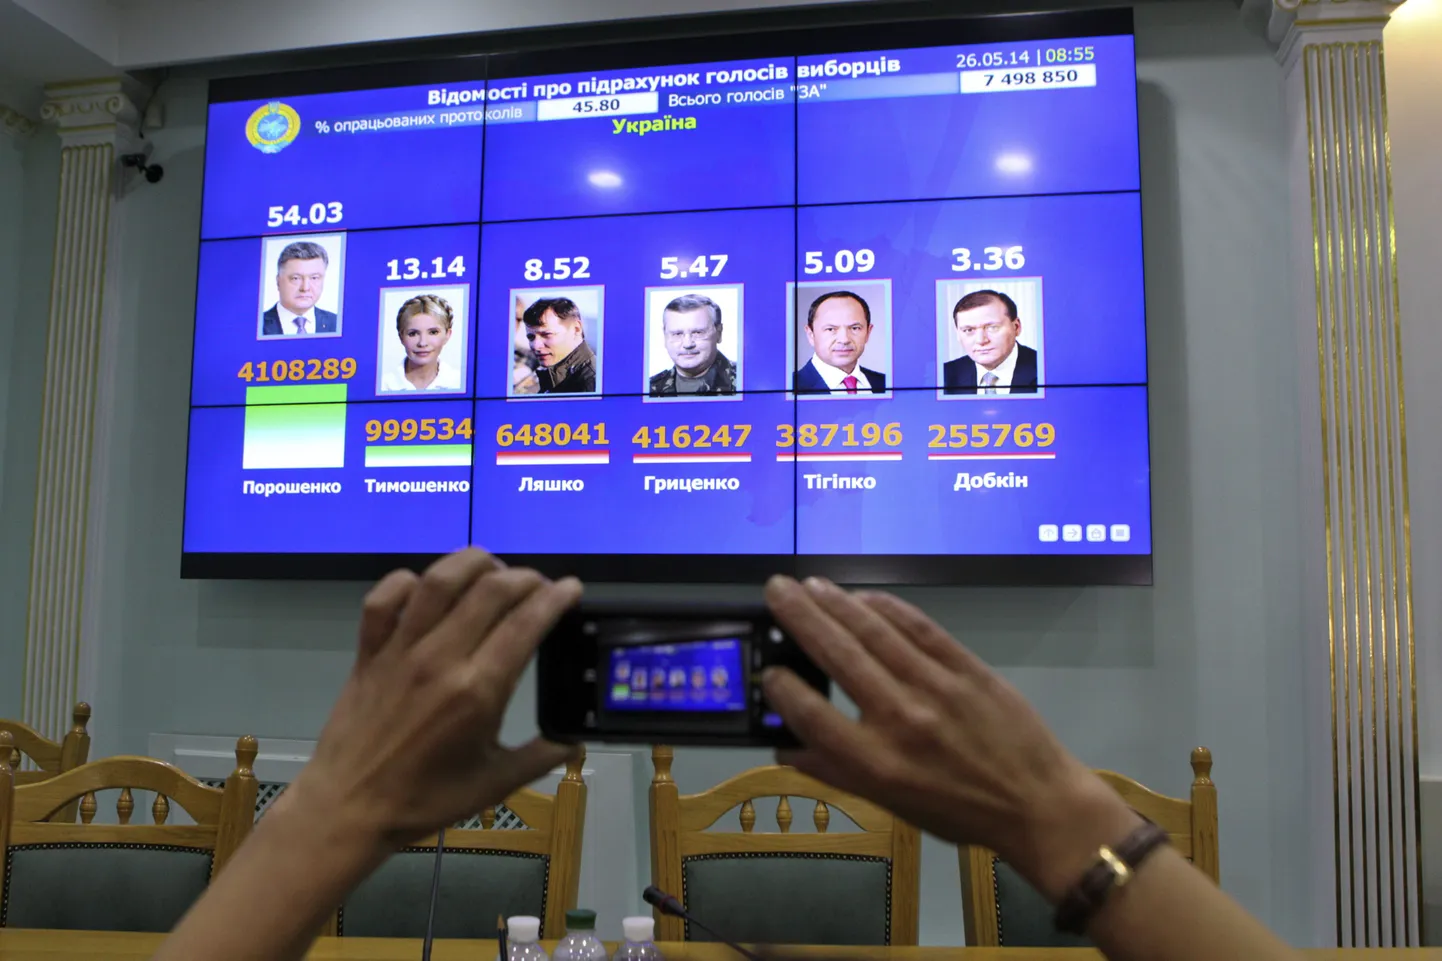 Голоса избирателей на выборах президента Украины подсчитаны.